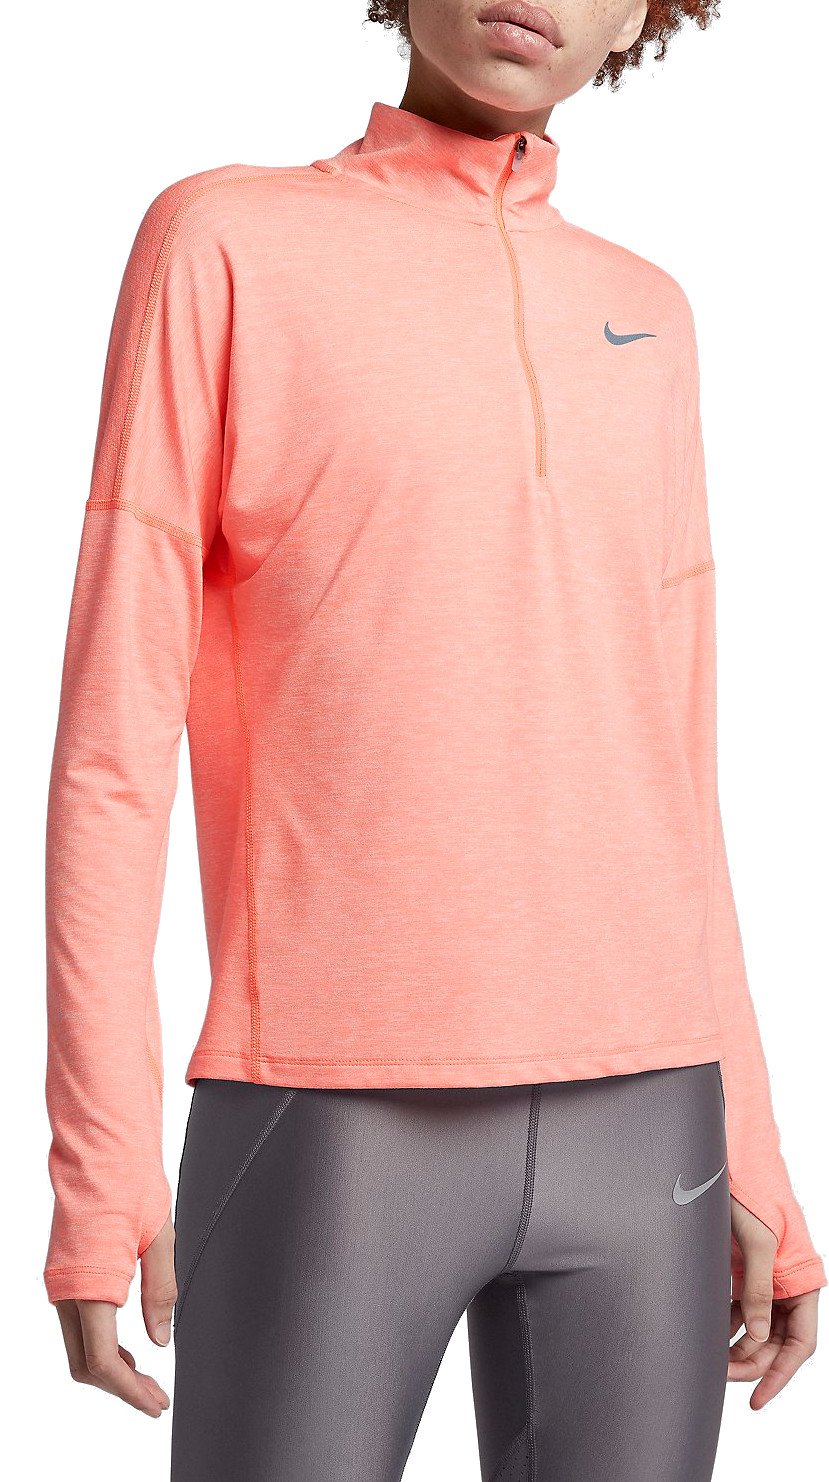 Dámské běžecké tričko s dlouhým rukávem Nike Dry Element